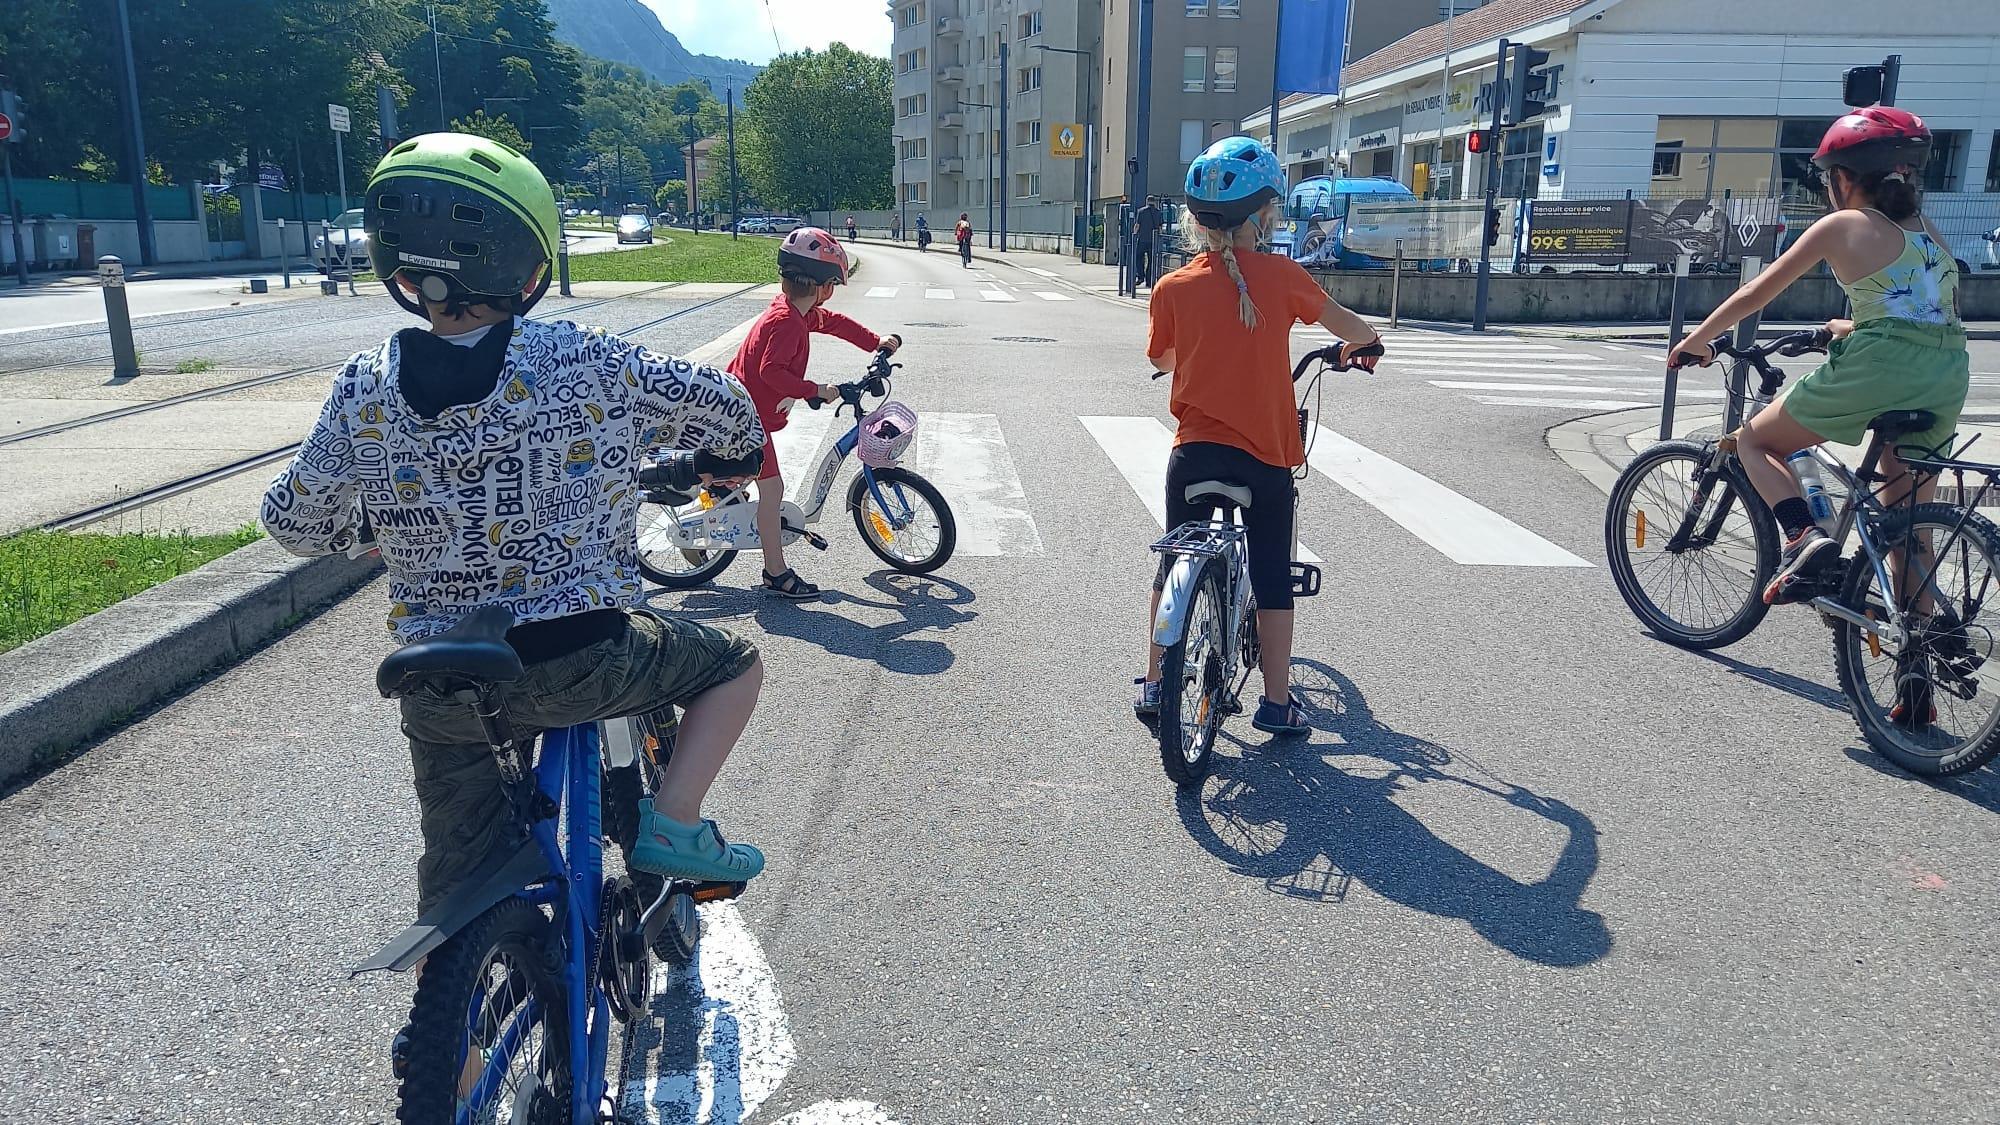 Véloparade des enfants “à vélo les marmots !” dimanche 2 juin après-midi